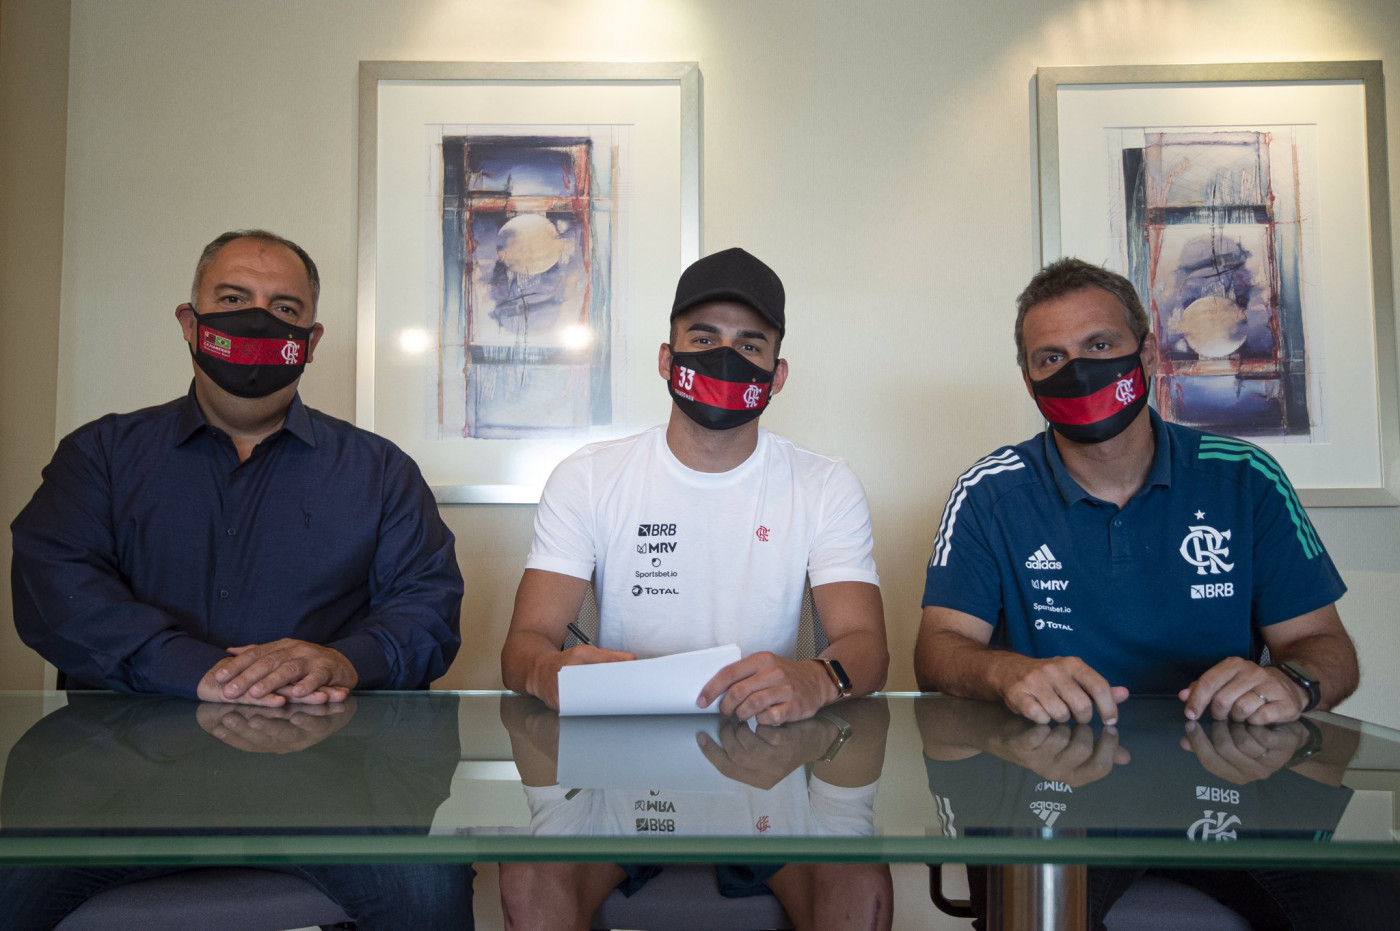 três homens brancos, o do meio Thiago Maia, jogador do flamengo. estão sentados um ao lado do outro e usam máscaras do Flamengo